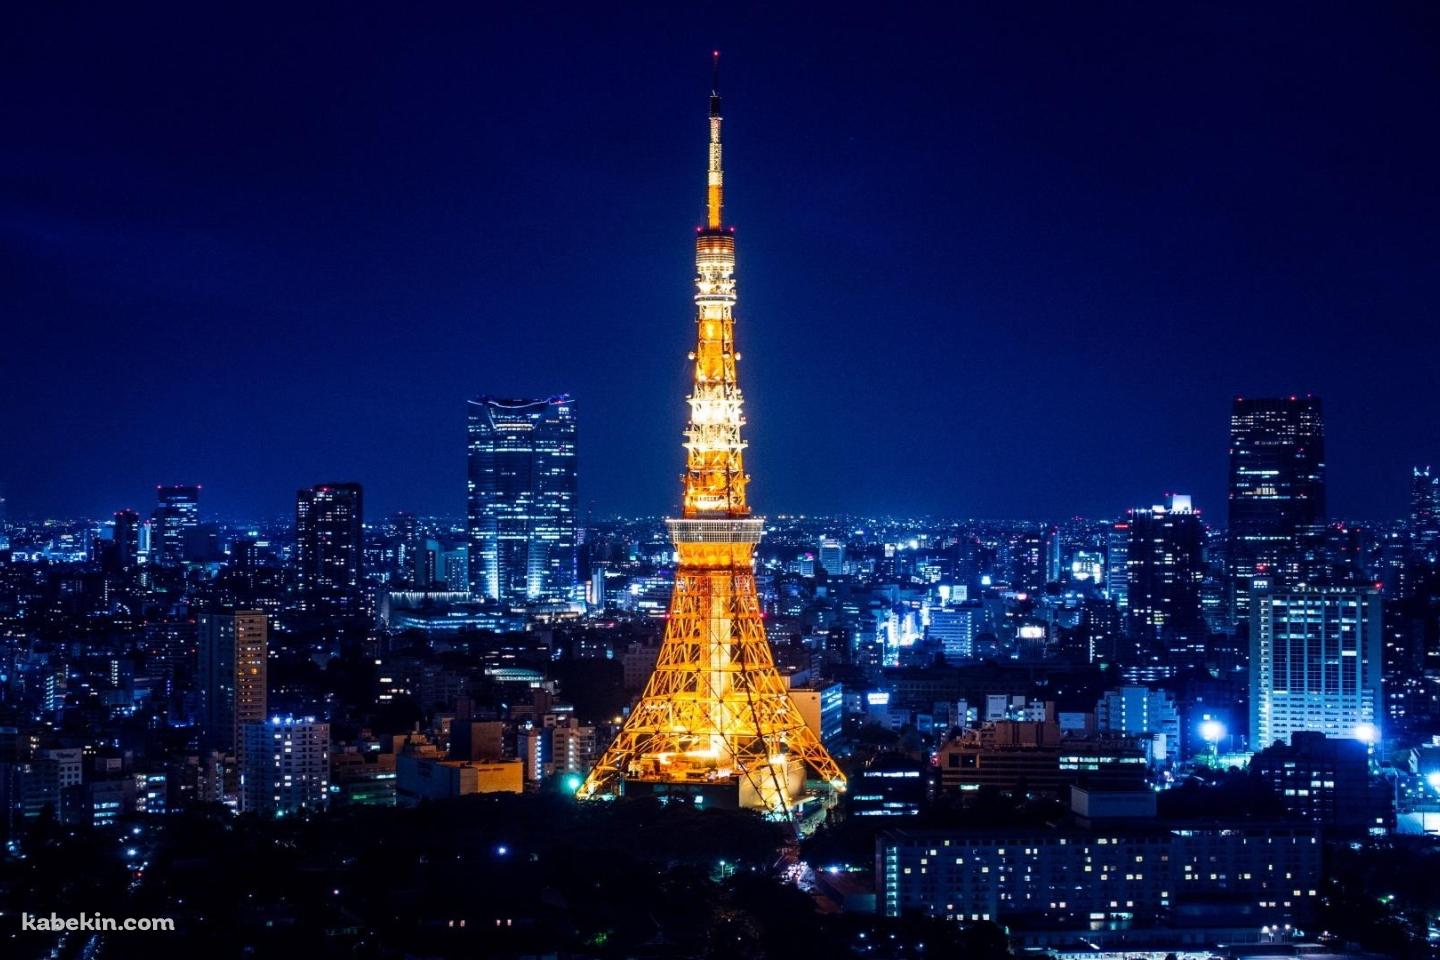 ライトアップした東京タワー の壁紙(1440px x 960px) 高画質 PC・デスクトップ用